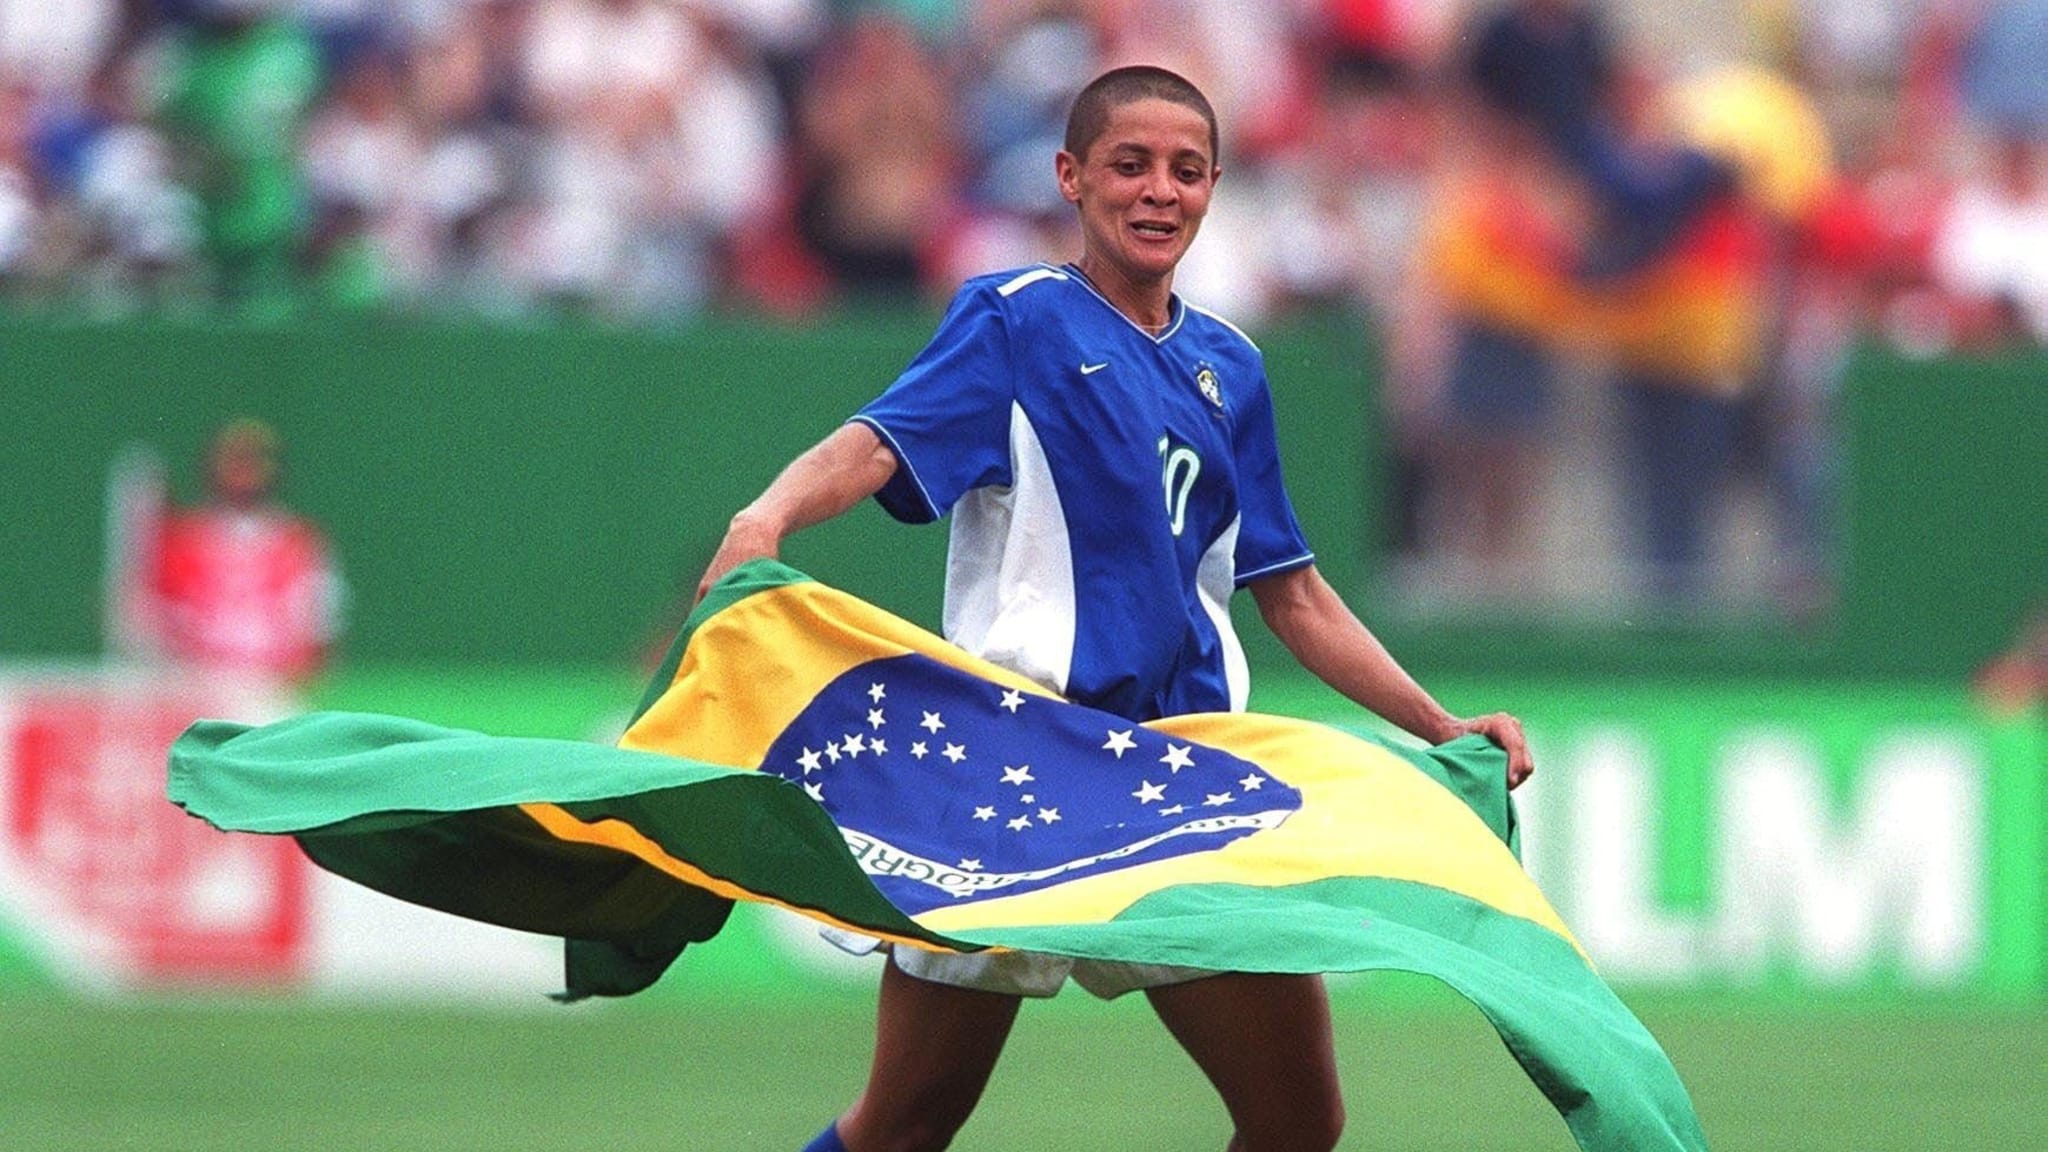 Copa do Mundo de Futebol Feminino: agora é a vez das mulheres - Mídia NINJA